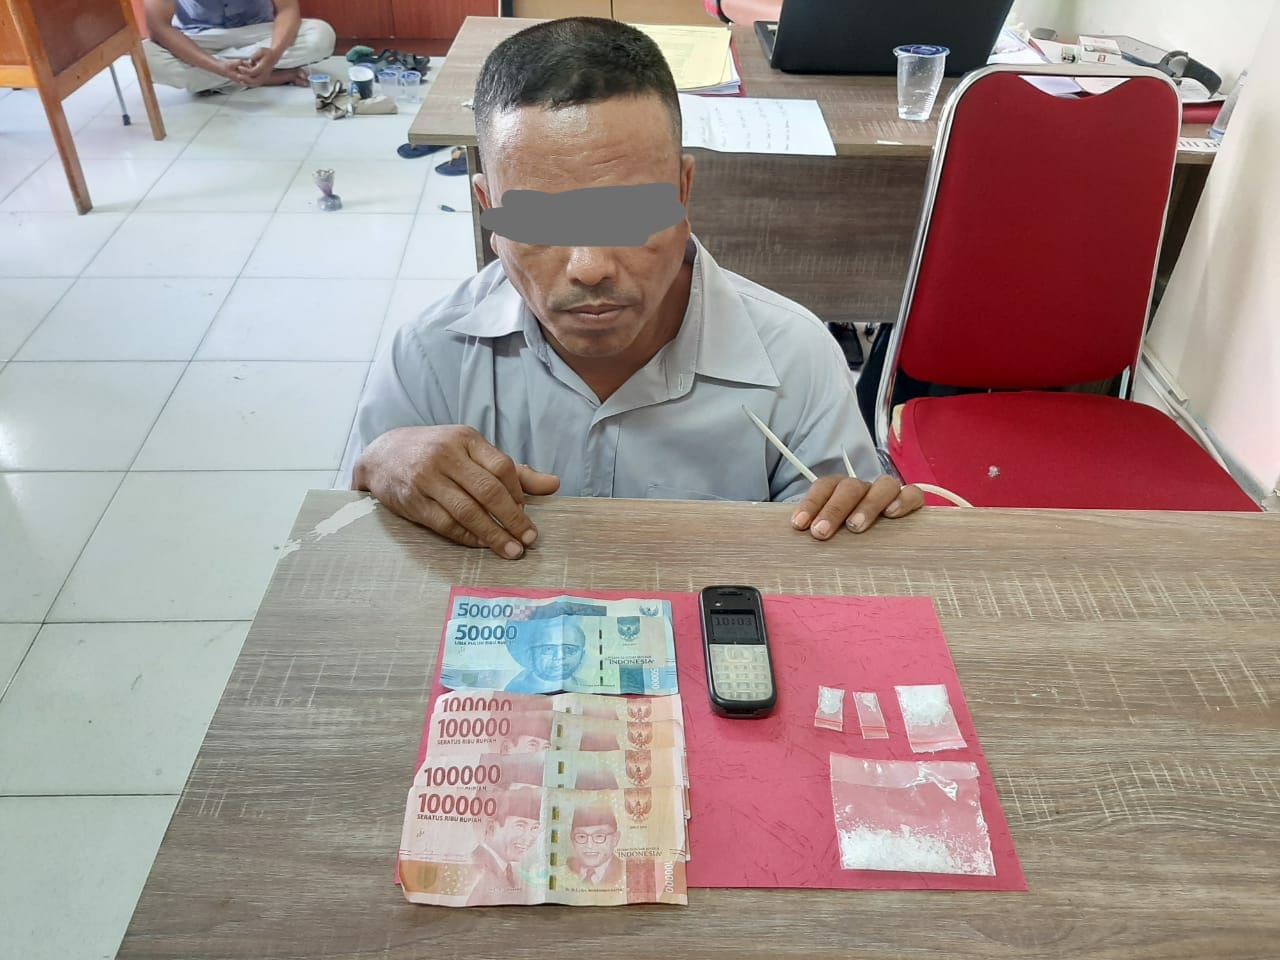 Miliki 4 Paket Shabu Siap Edar, Pria di Perawang ini Ditangkap Polisi